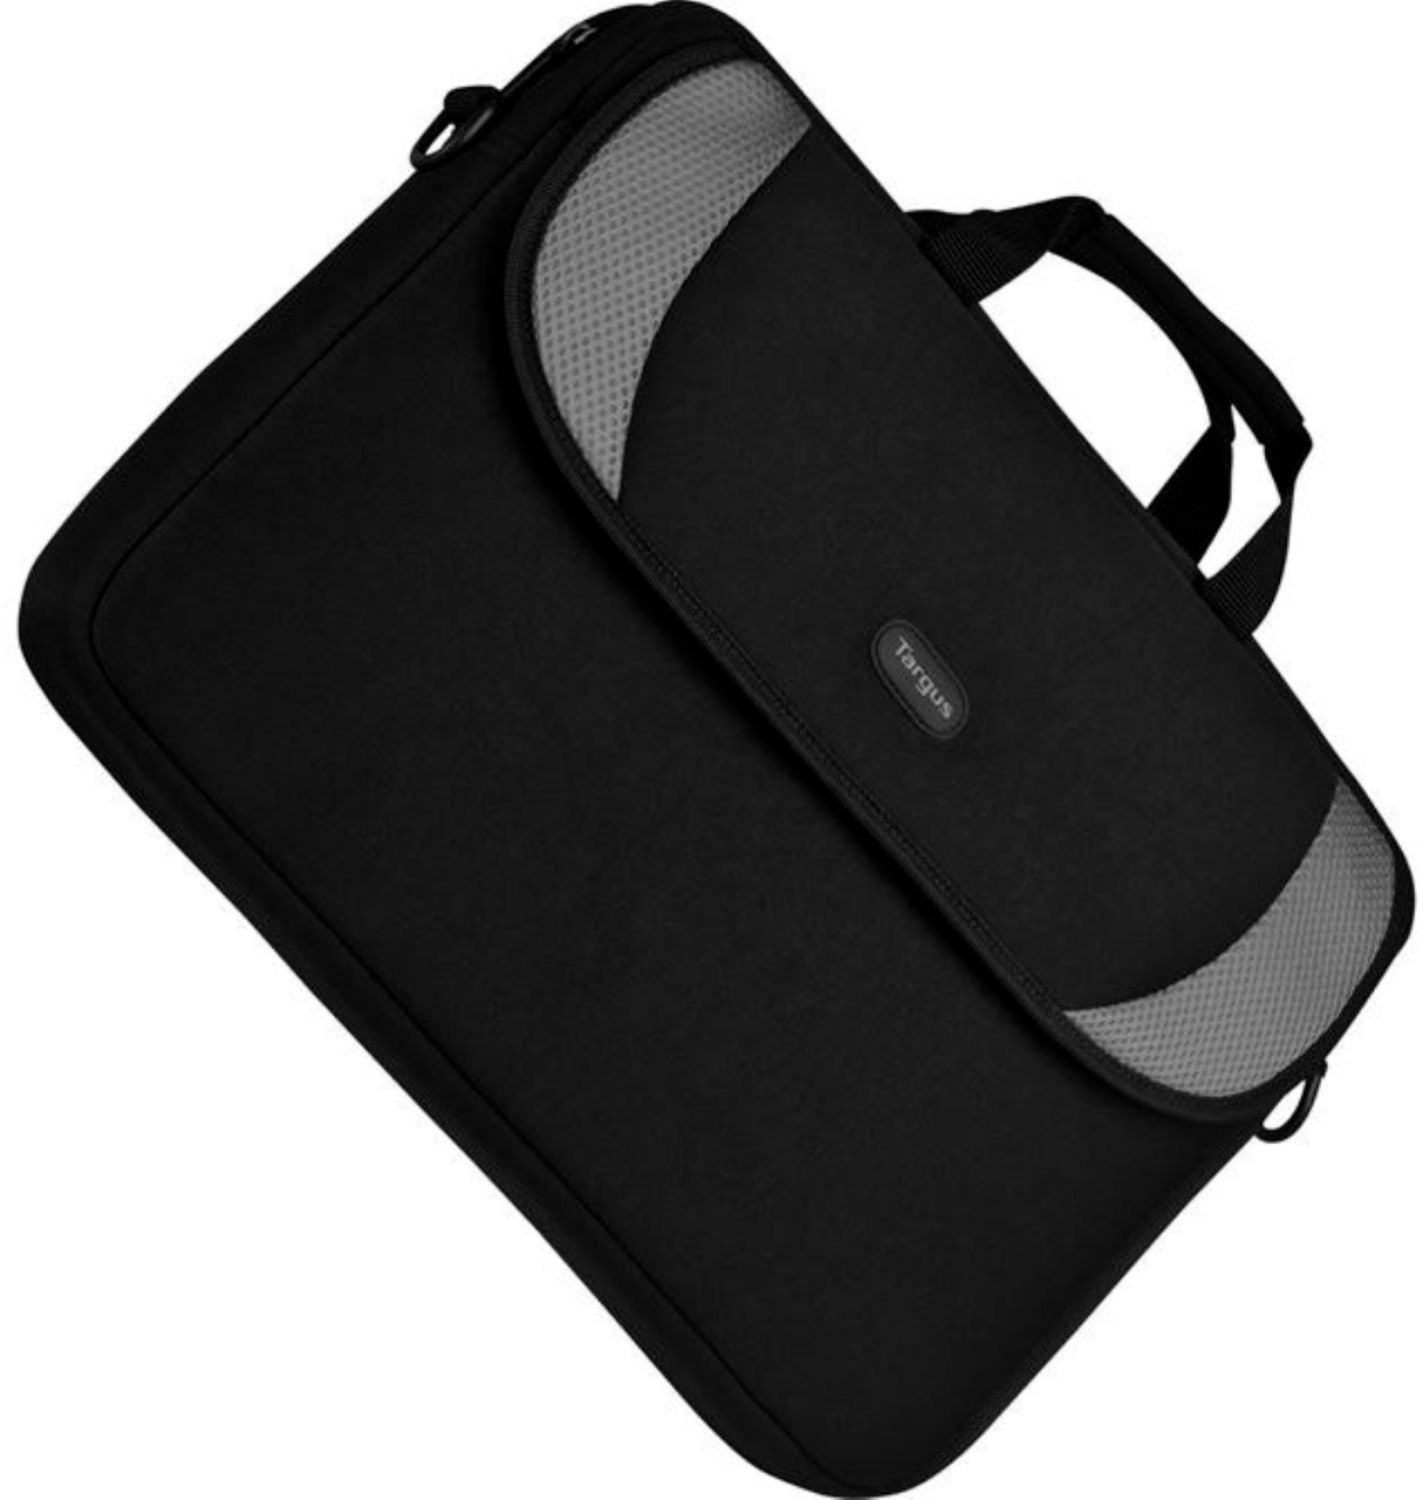 Black/Gray Targus CVR200 16-Inch Neoprene Sleeve Designed for Notebooks